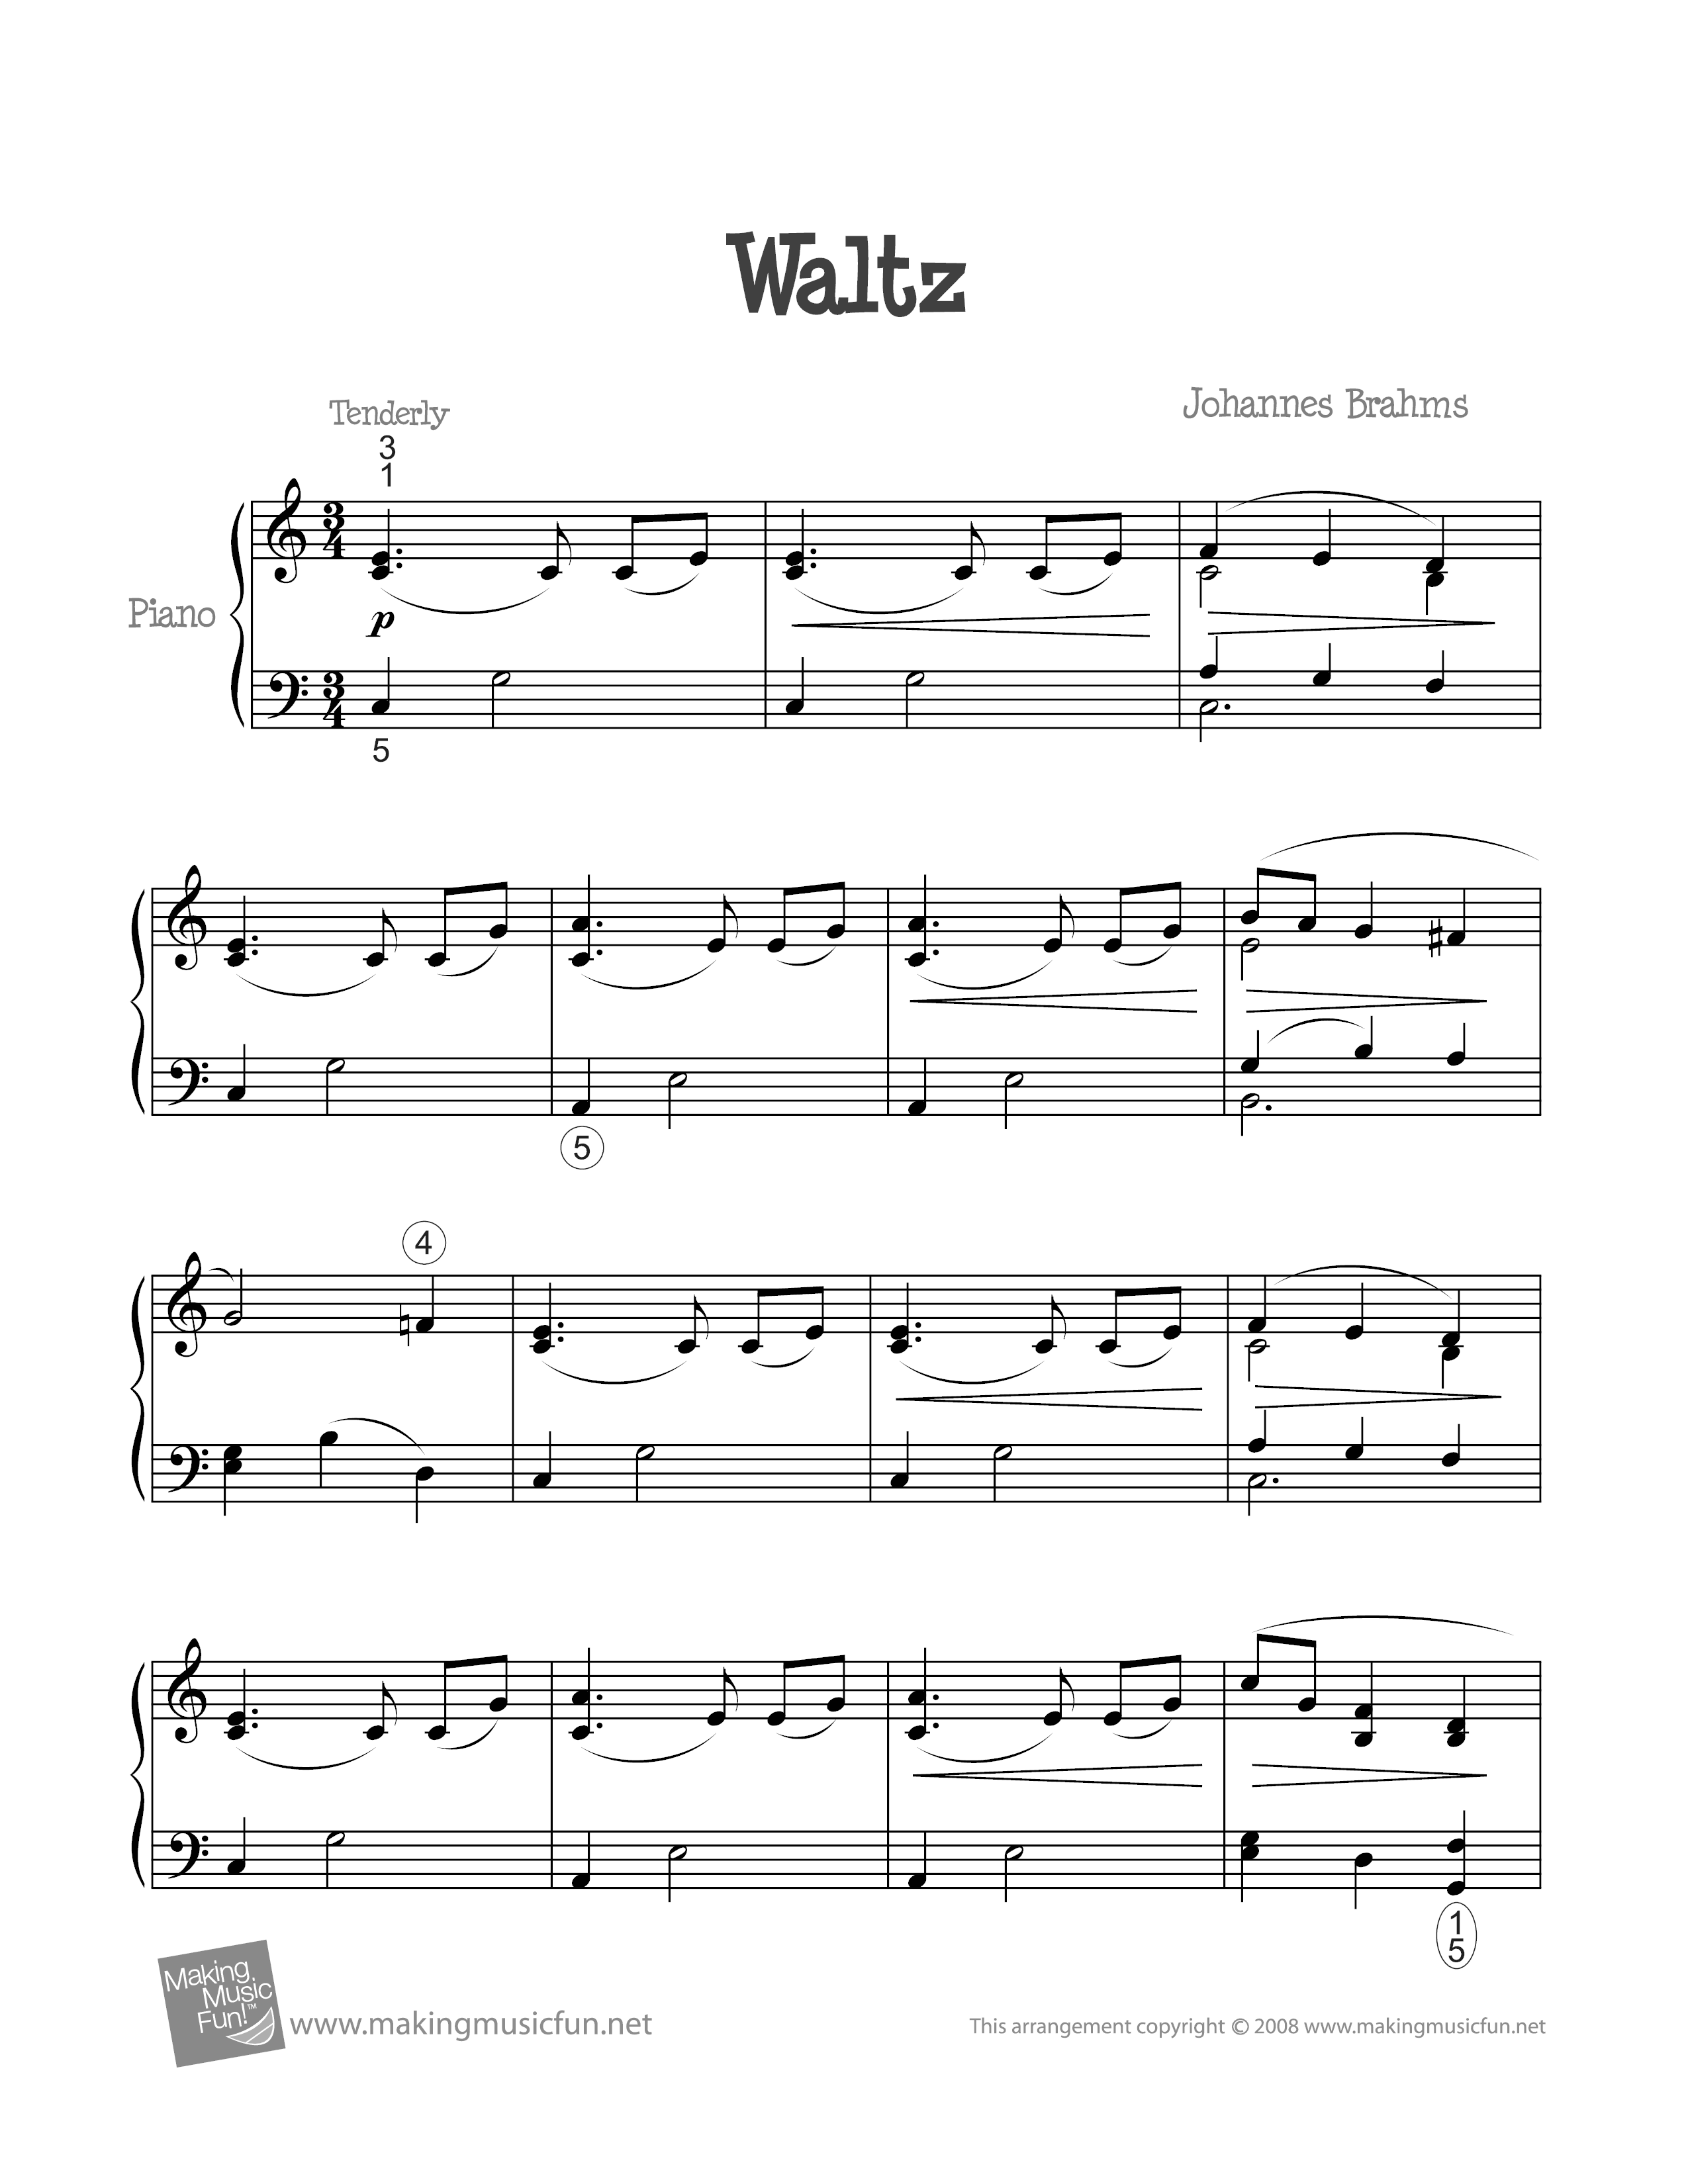 Waltz in Ab Score